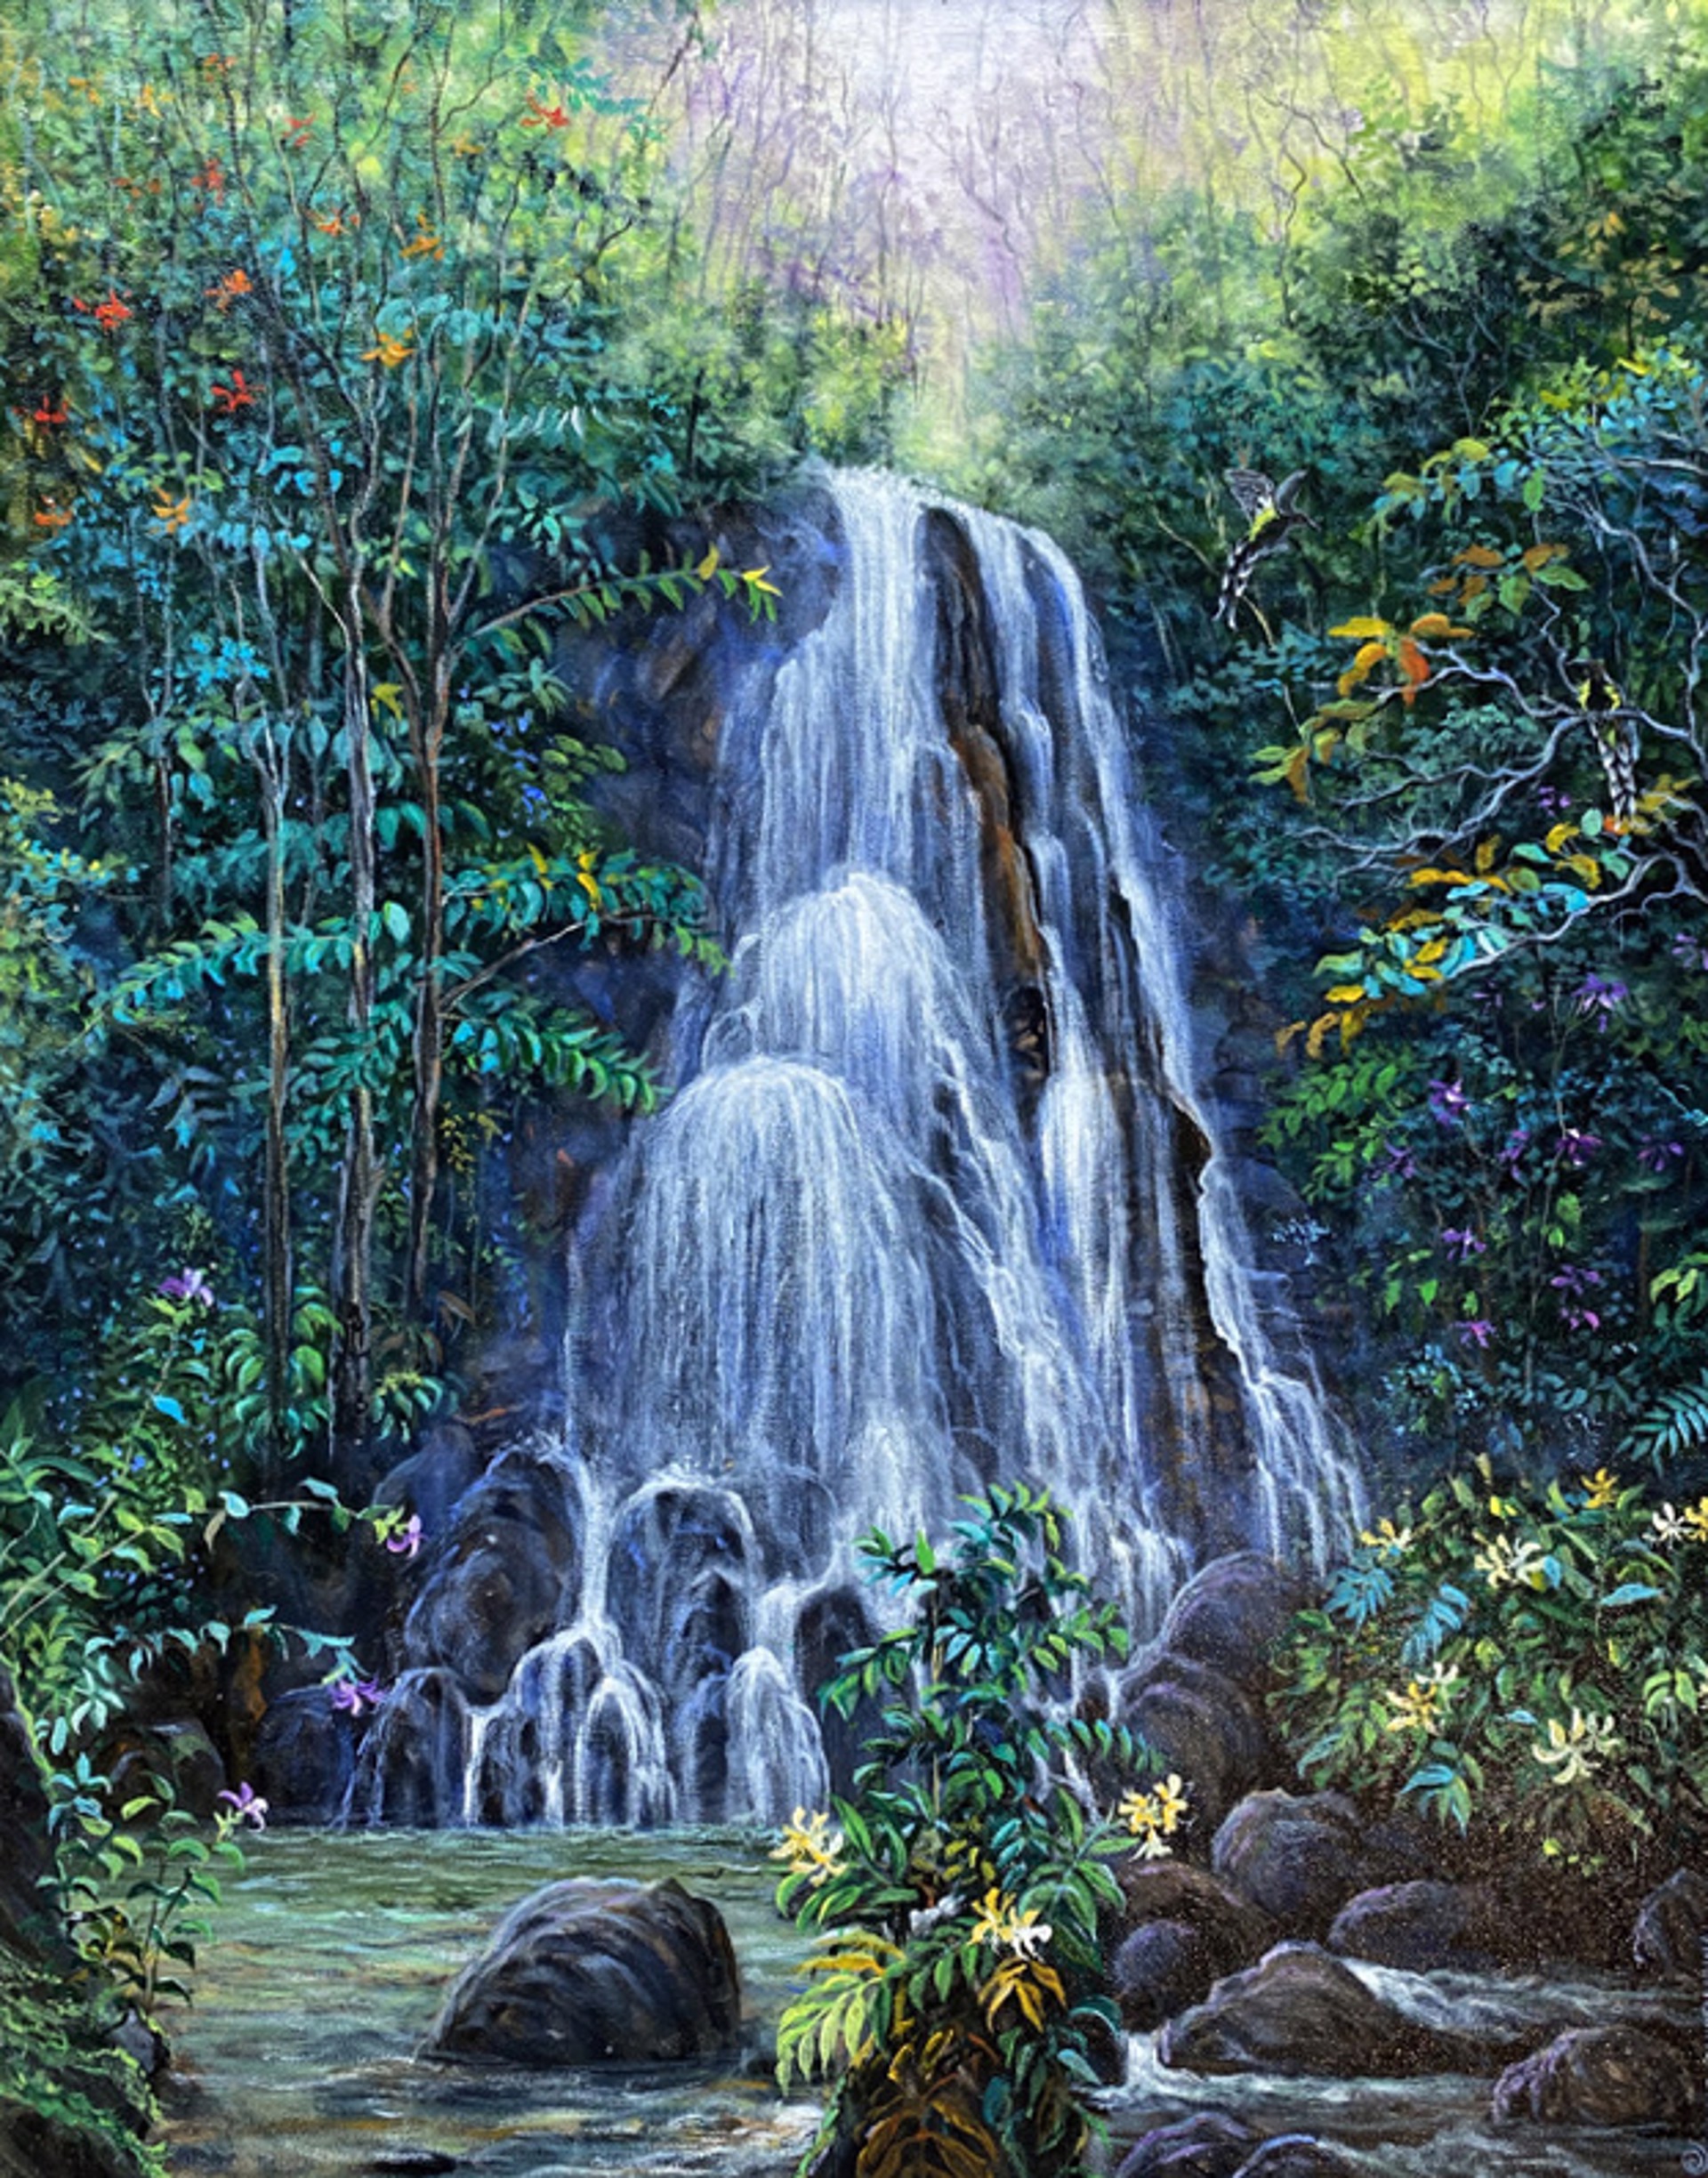 Luakaha Falls at Nuʻuanu by Esperance Rakotonirina